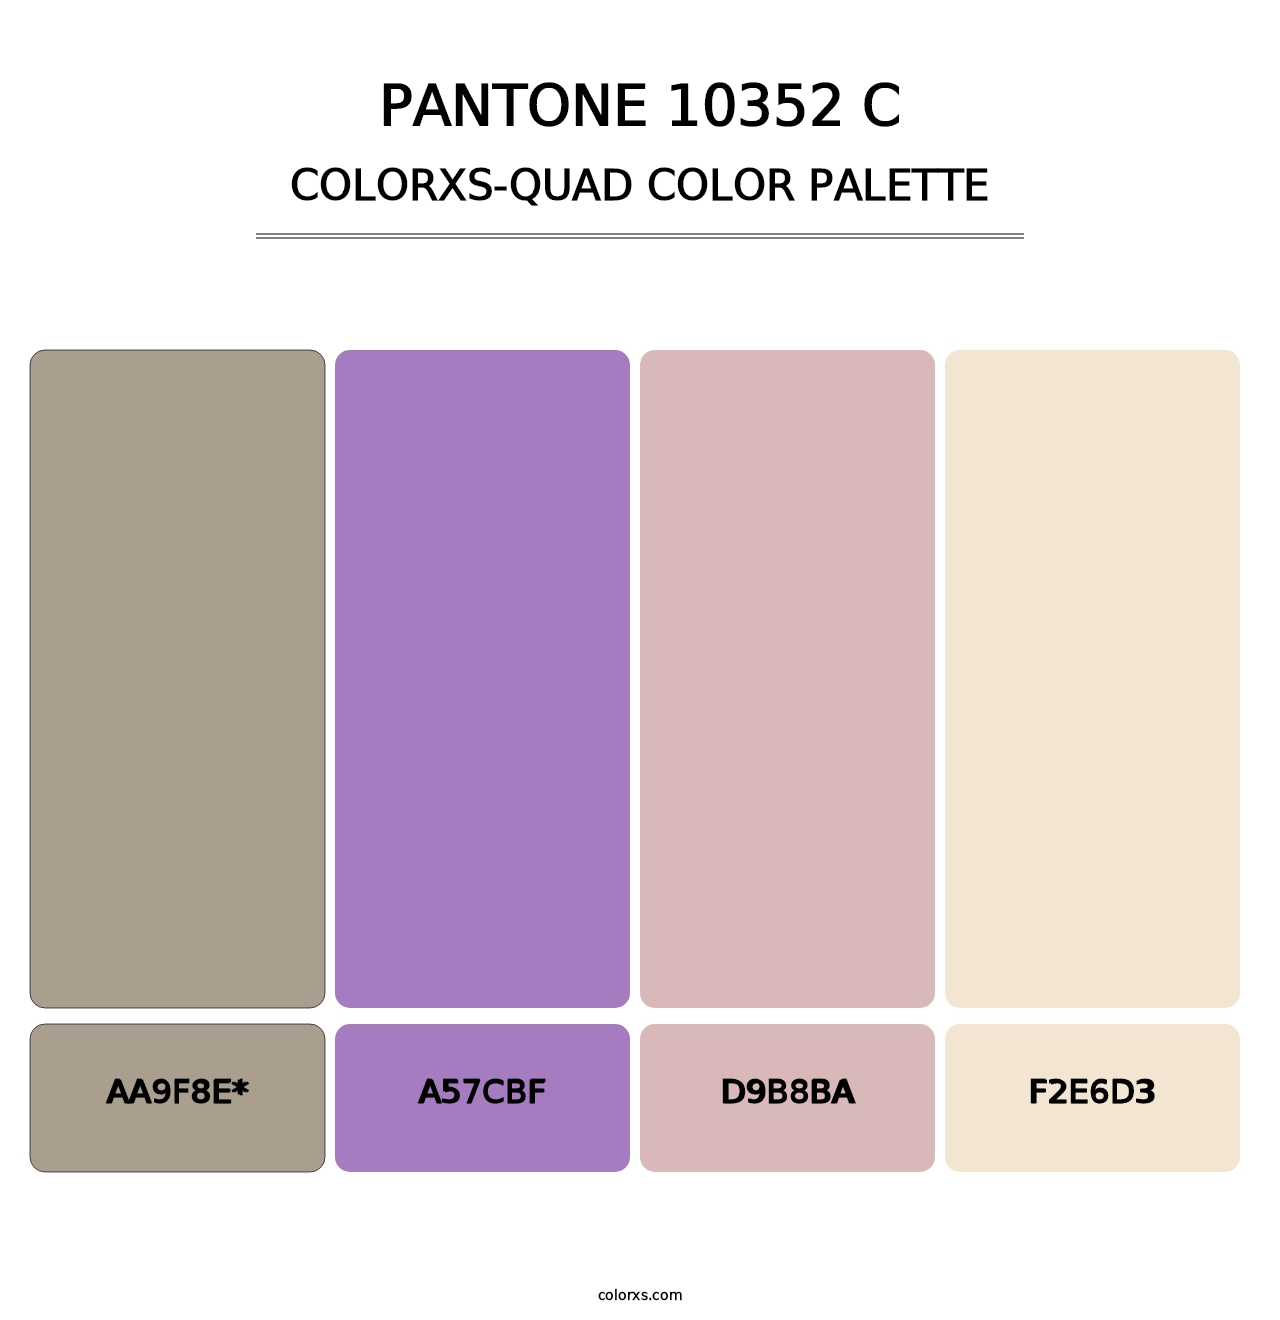 PANTONE 10352 C - Colorxs Quad Palette